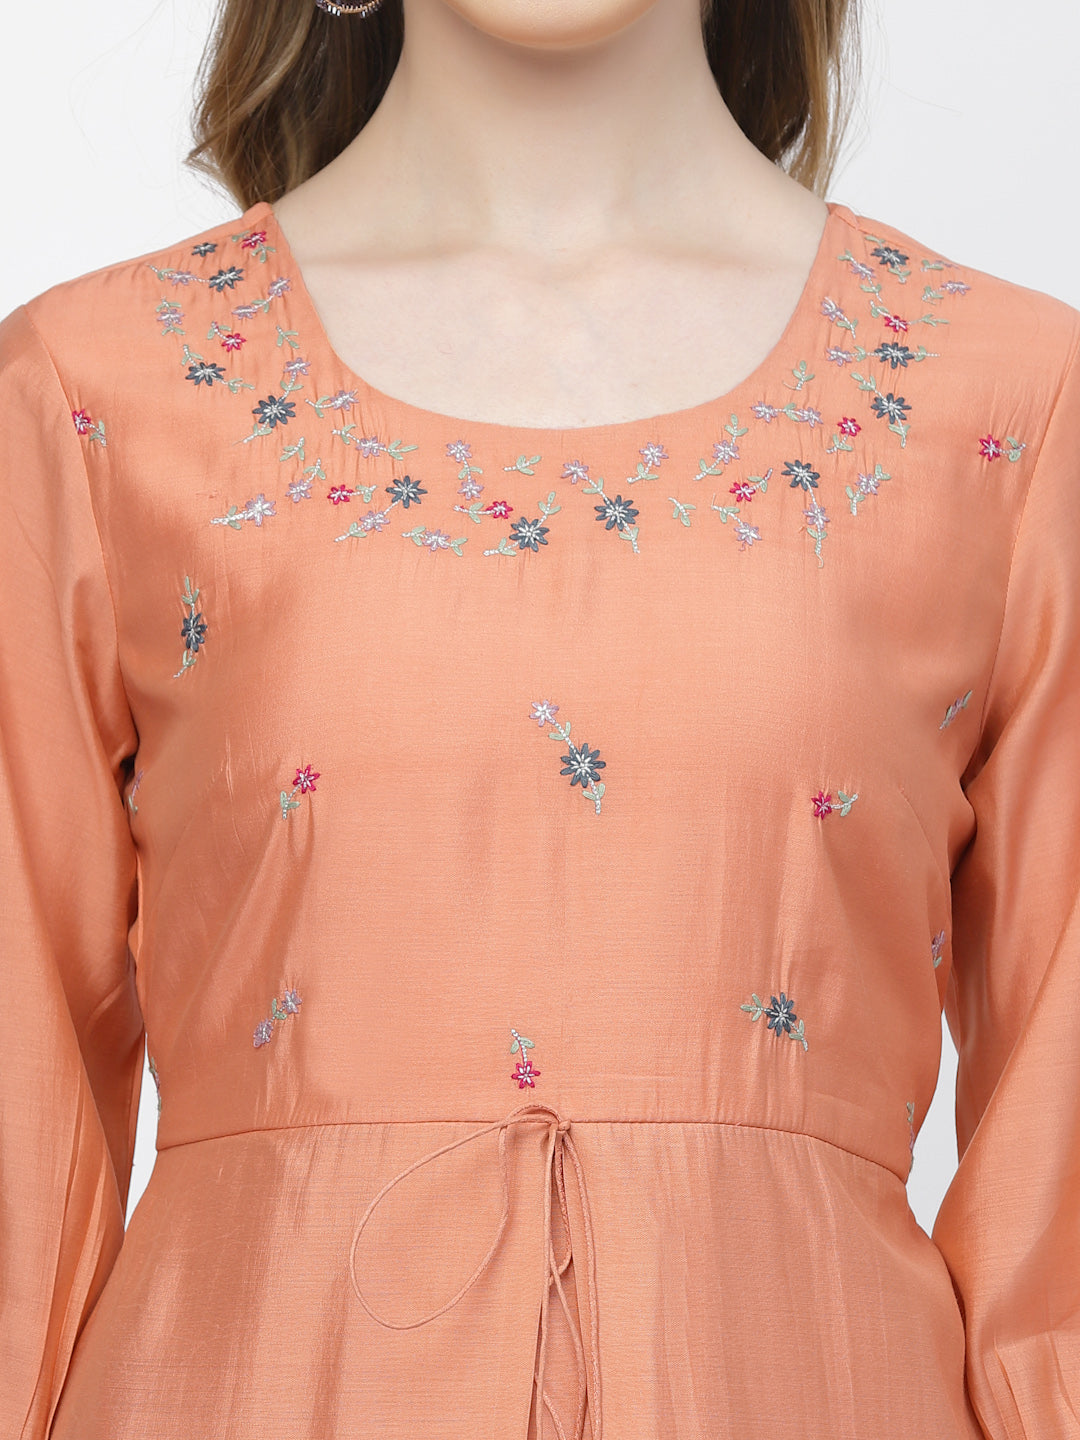 Pale Salmon Chanderi Silk Embroidered Summer Dress - ARH1376